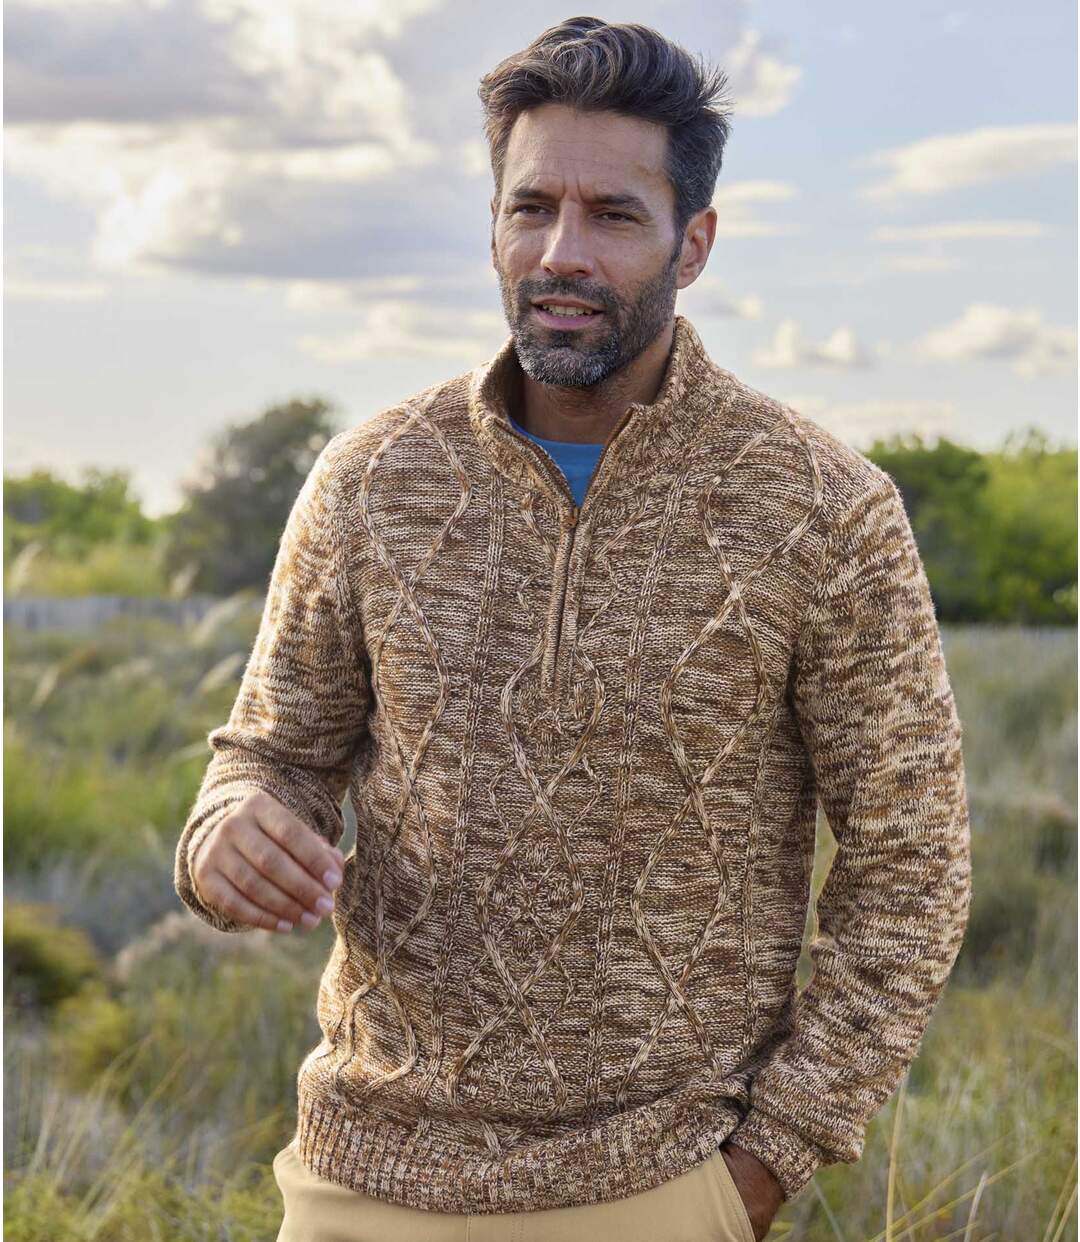 Trykotowy, melanżowy sweter z wykładanym kołnierzem  Atlas For Men